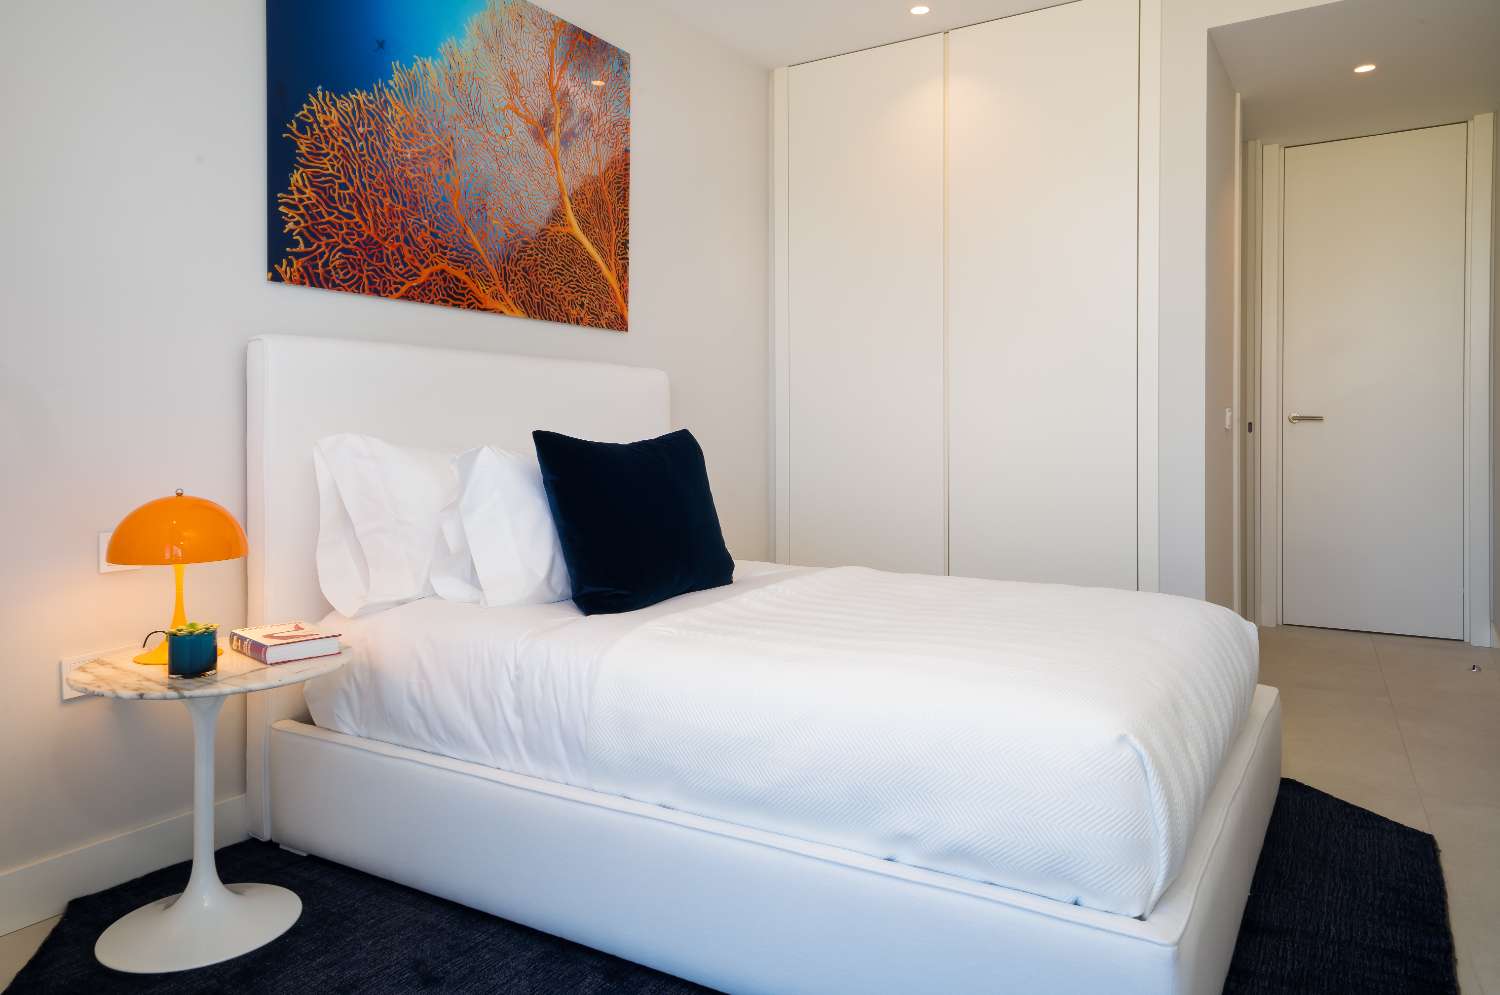 Сказочный двухуровневый пентхаус с 4 спальнями и панорамным видом на море. Дизайн интерьера от Аалто включен в стоимость.